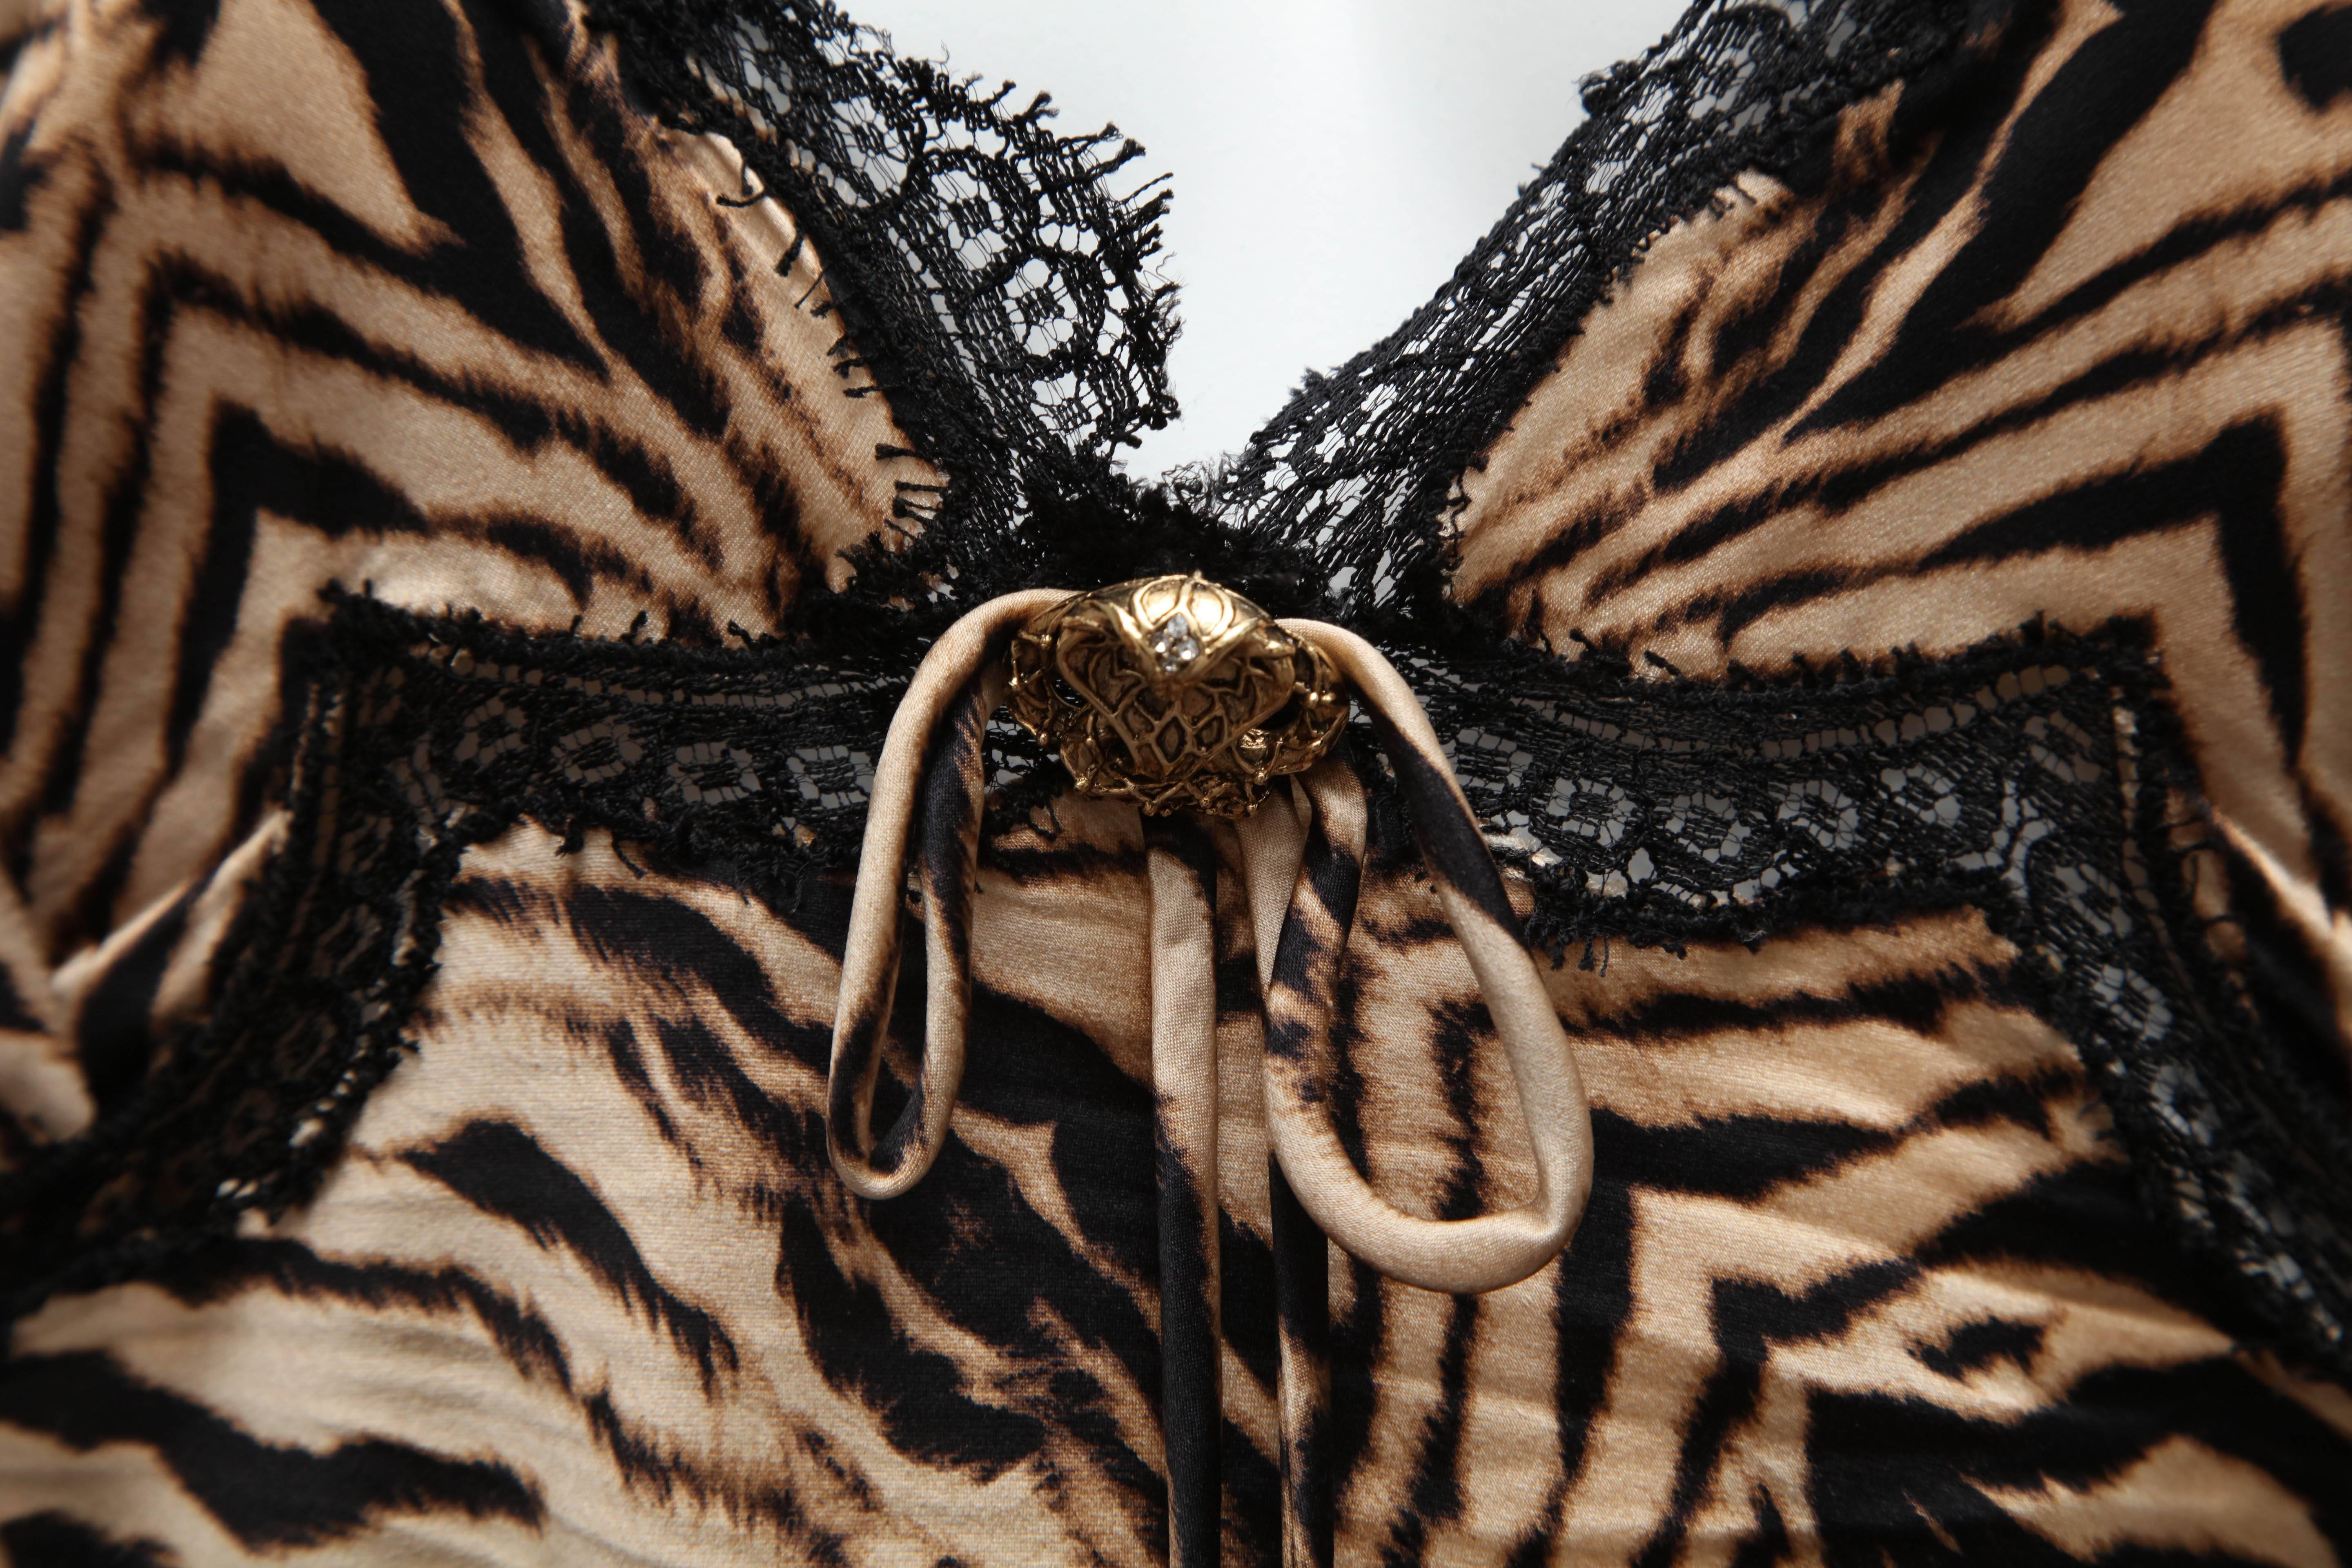 Roberto Cavalli Silk Slip Leopard Print Dress In Good Condition For Sale In Chicago, IL